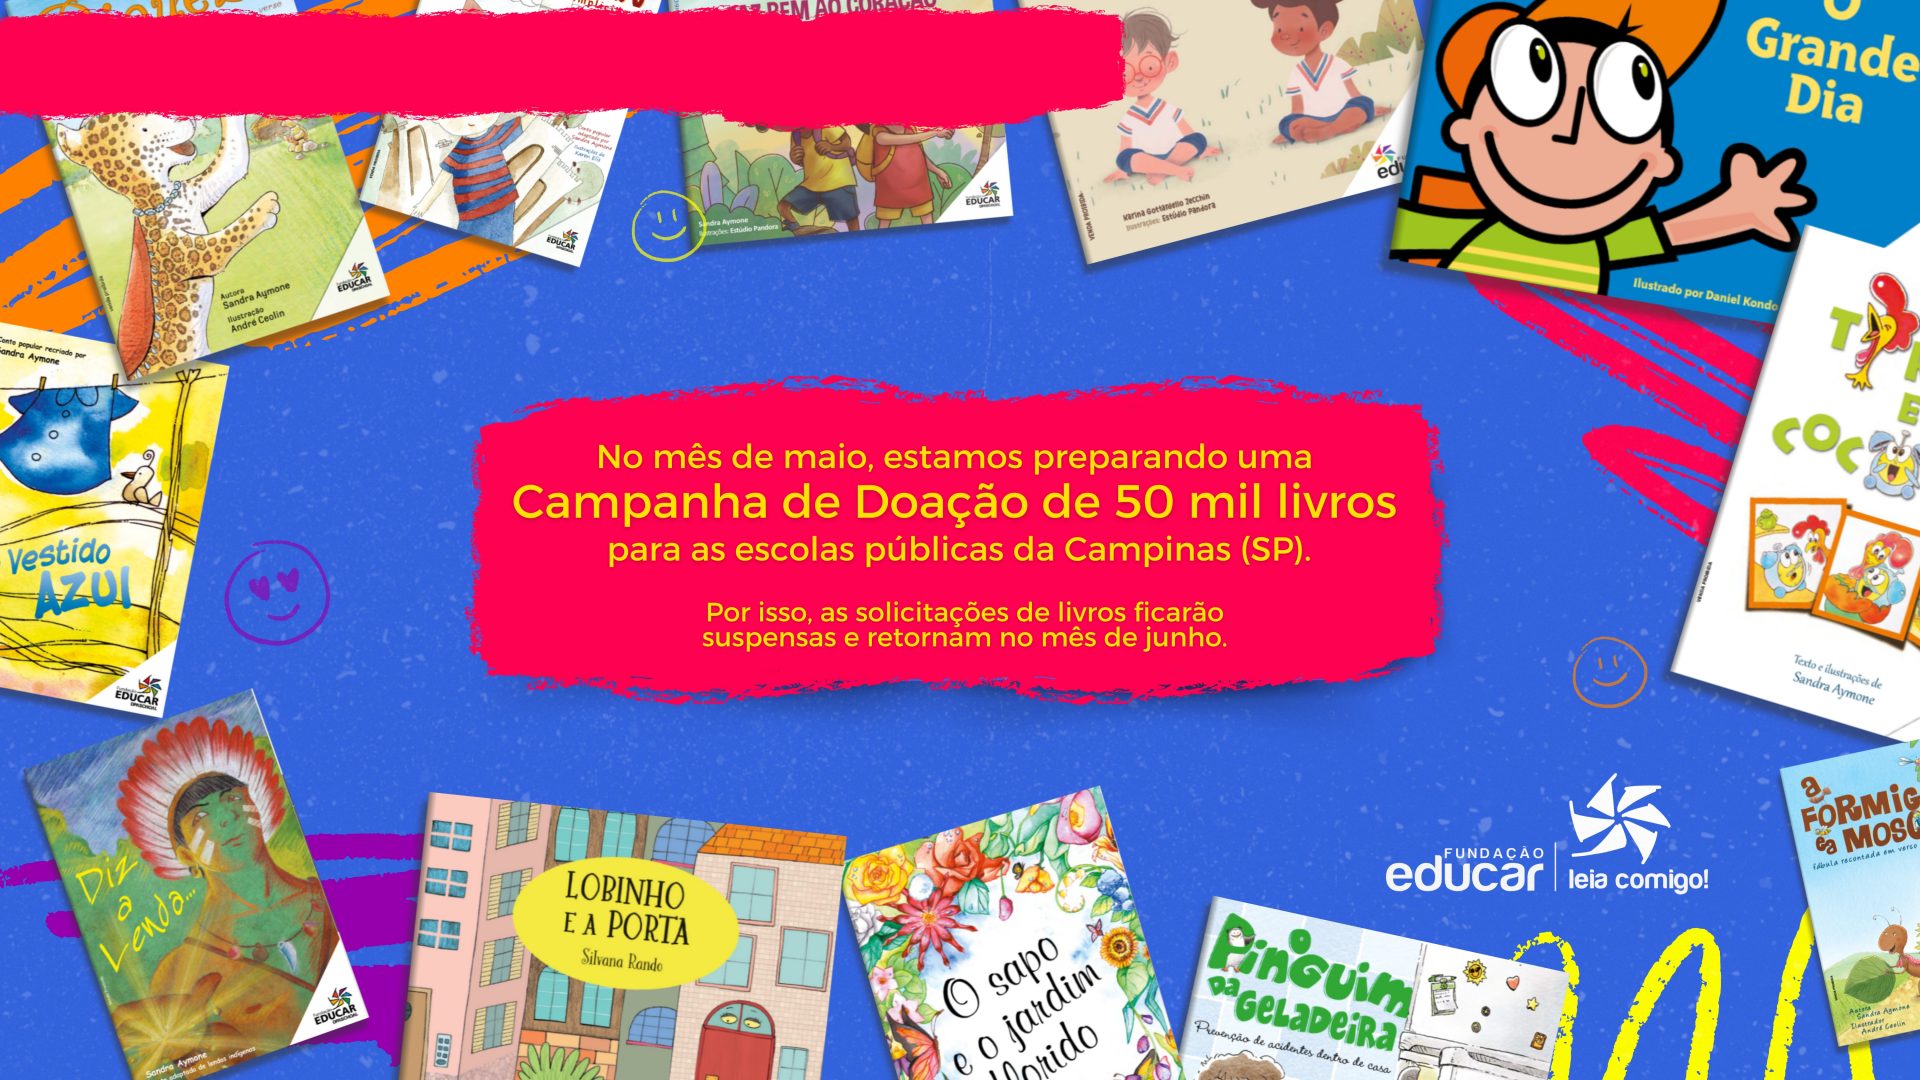 No mês de maio, estamos preparando uma Campanha de Doação de 50 mil livros para as escolas públicas da Campinas (SP). Por isso, as solicitações de livros ficarão suspensas e retornam no mês de junho.